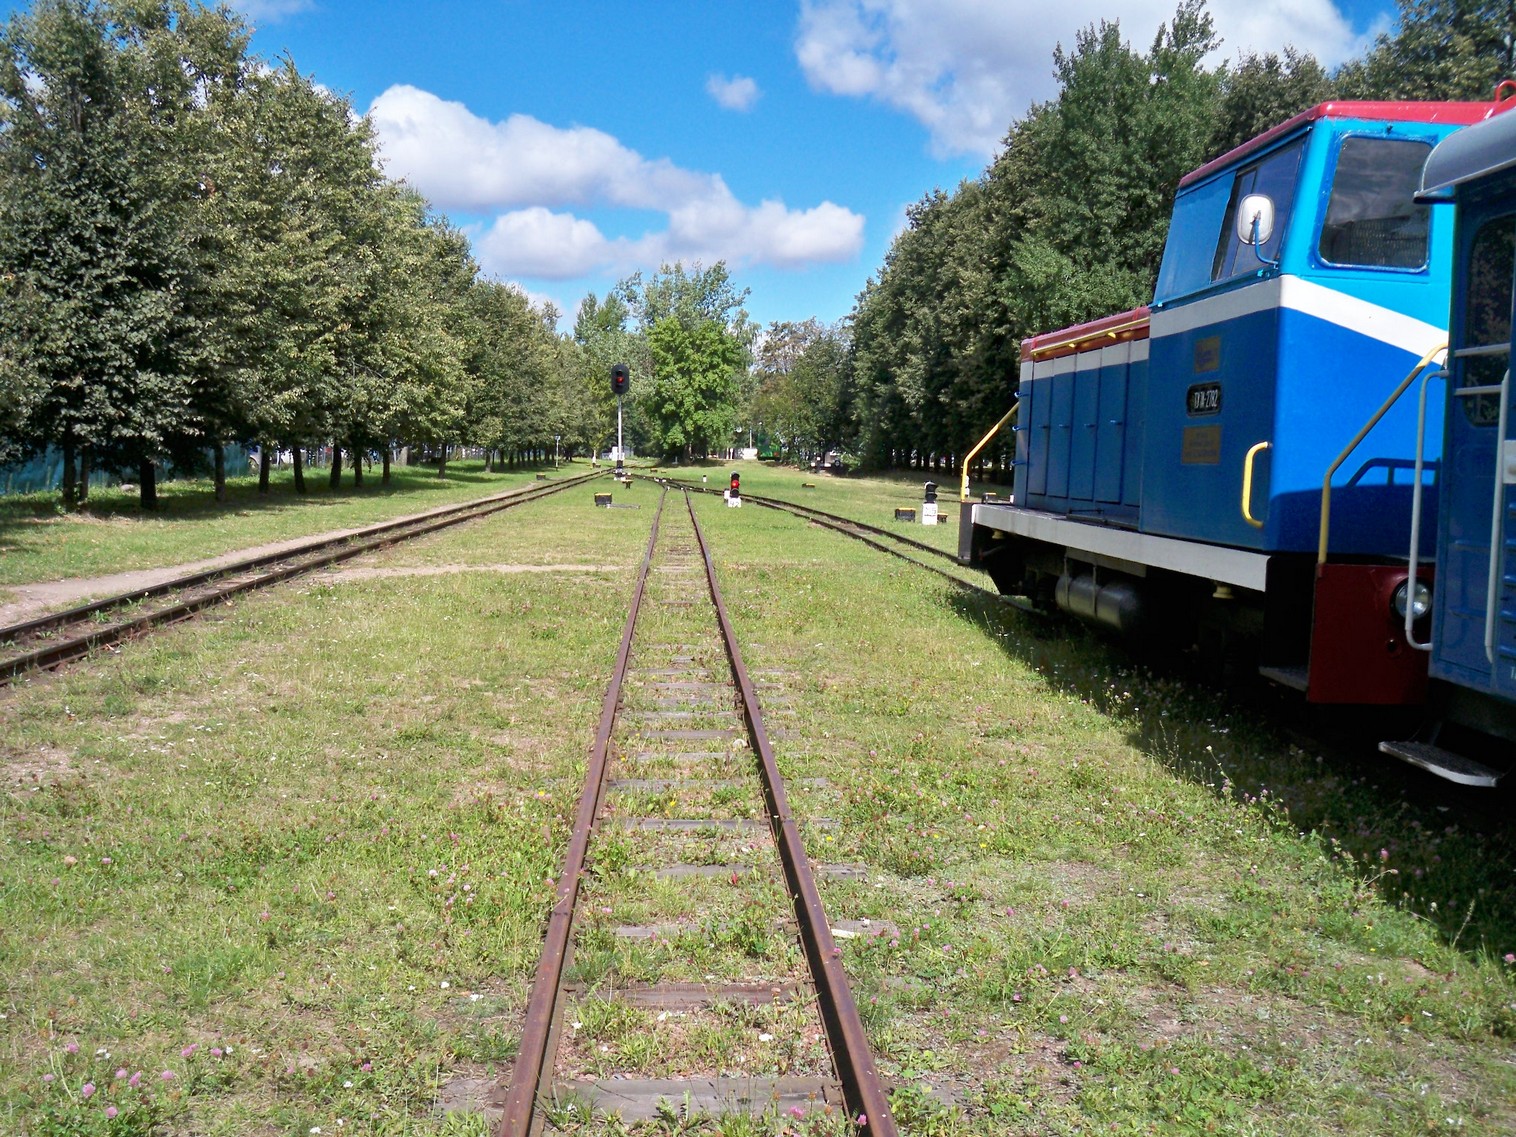 Малая Белорусская (Минская) детская железная дорога  —  фотографии, сделанные в 2013 году (часть 3)